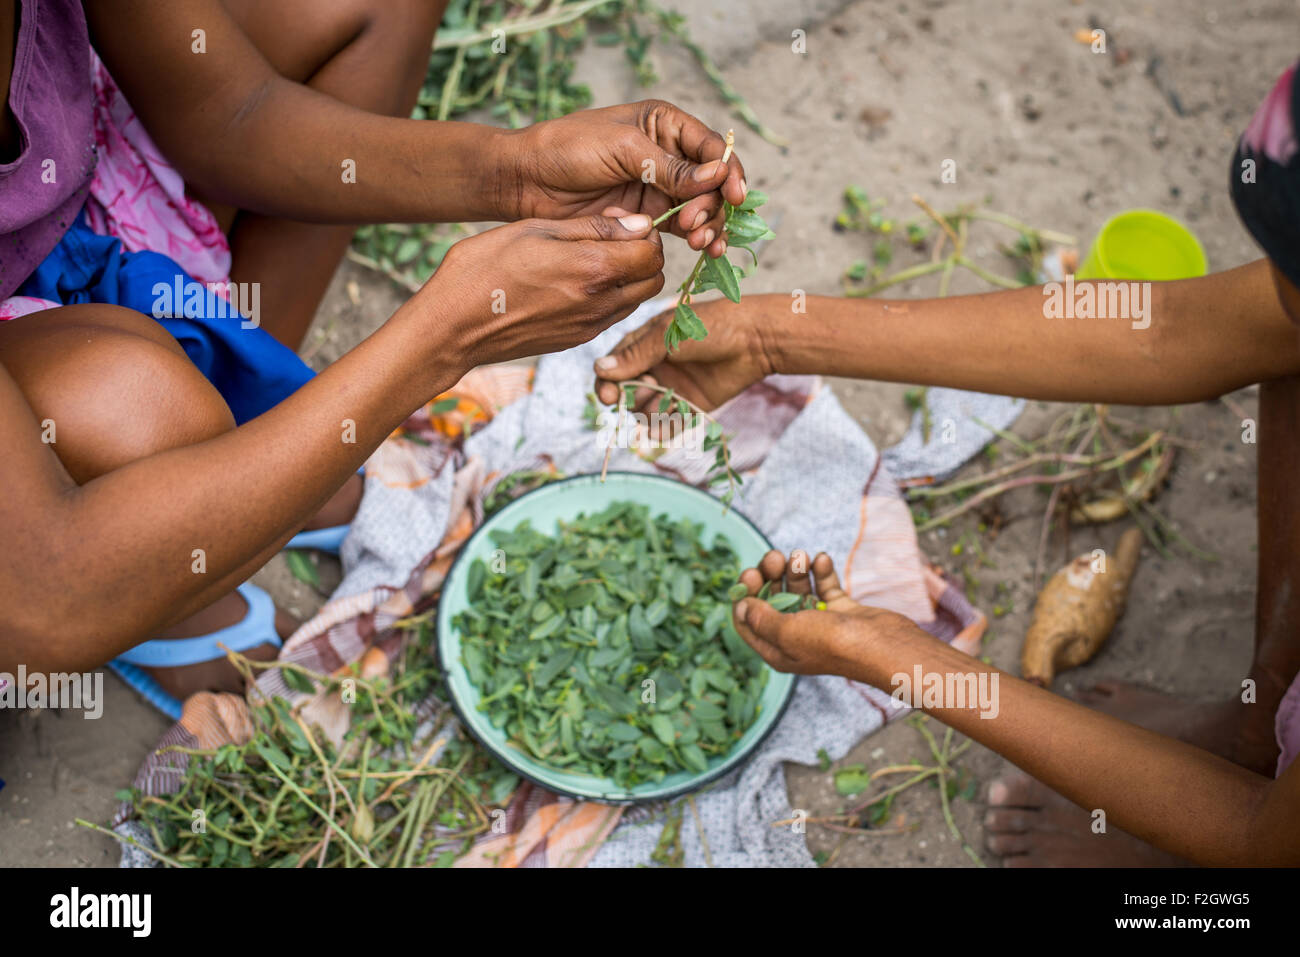 San persone o i boscimani nella preparazione degli alimenti nel loro villaggio in Botswana, Africa Foto Stock